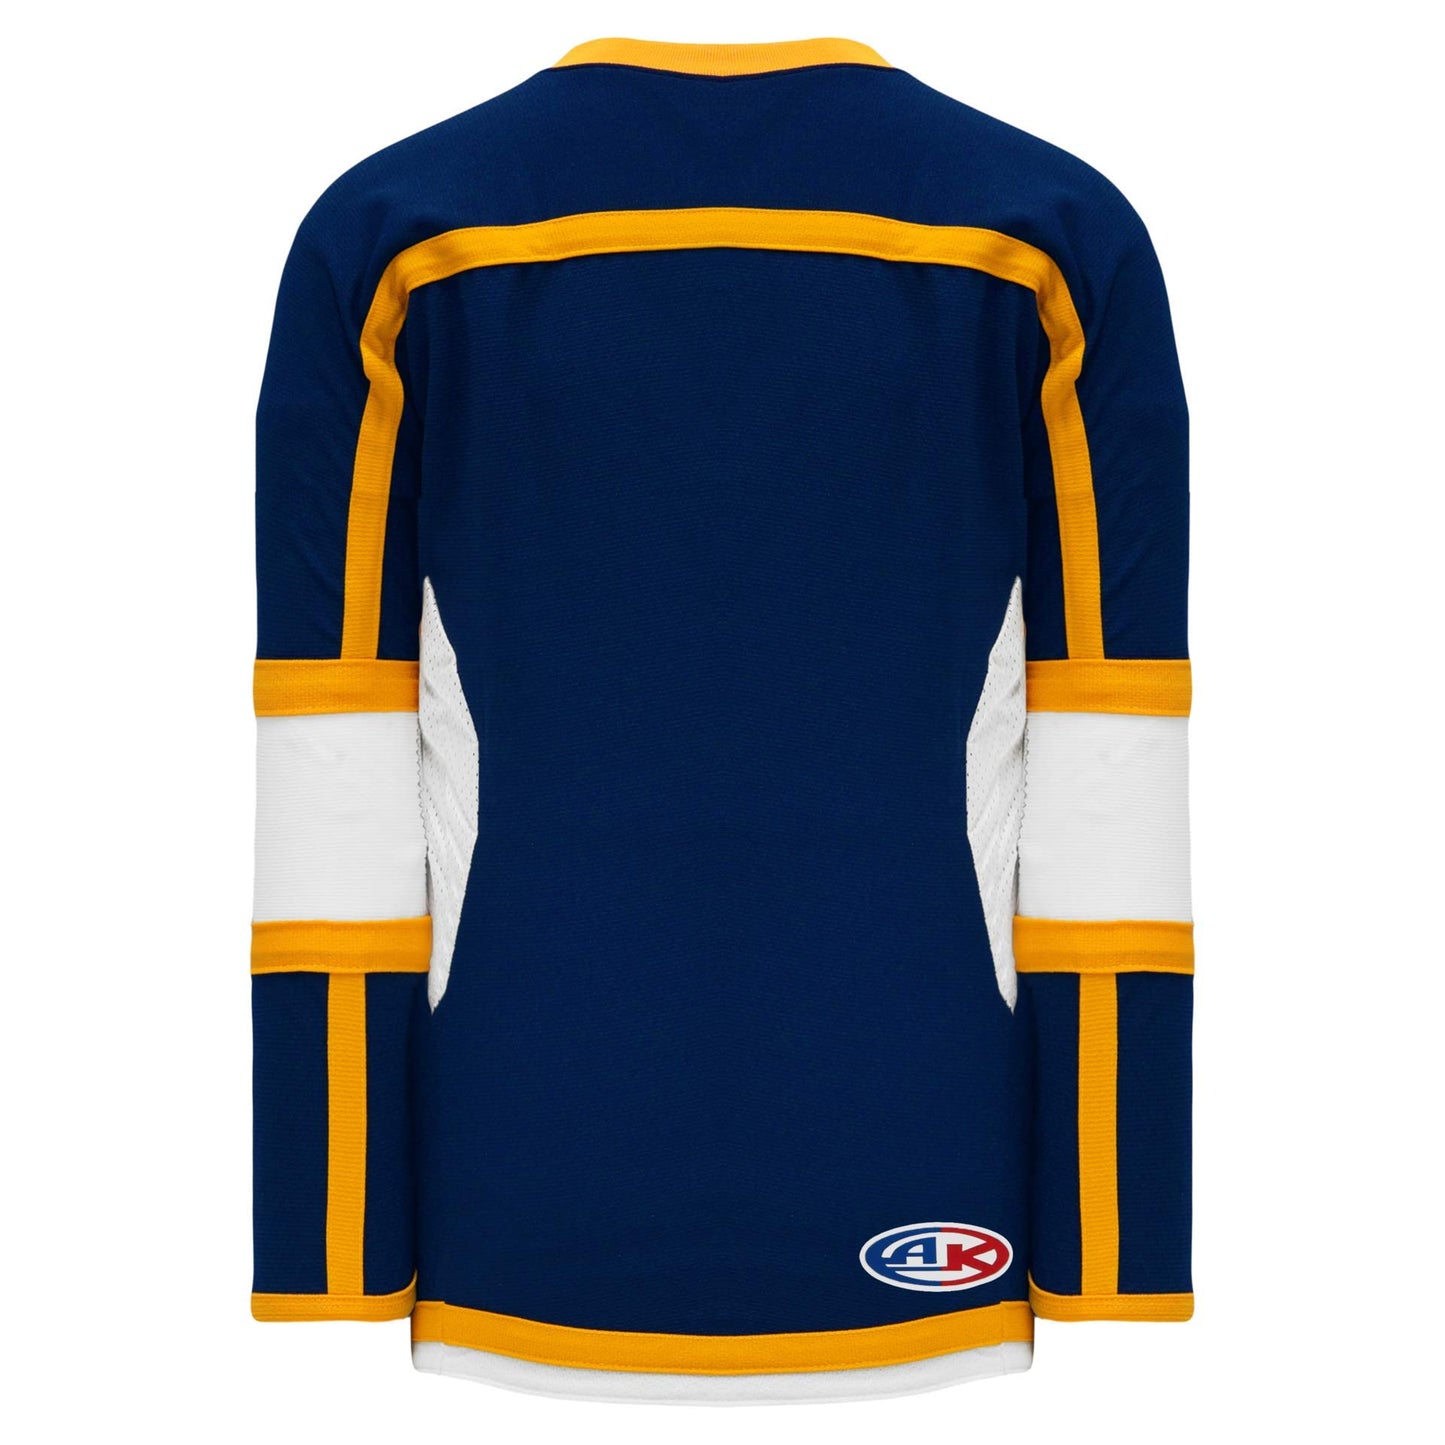 Navy, White, Gold Durastar Mesh  hockey jerseys no minimum